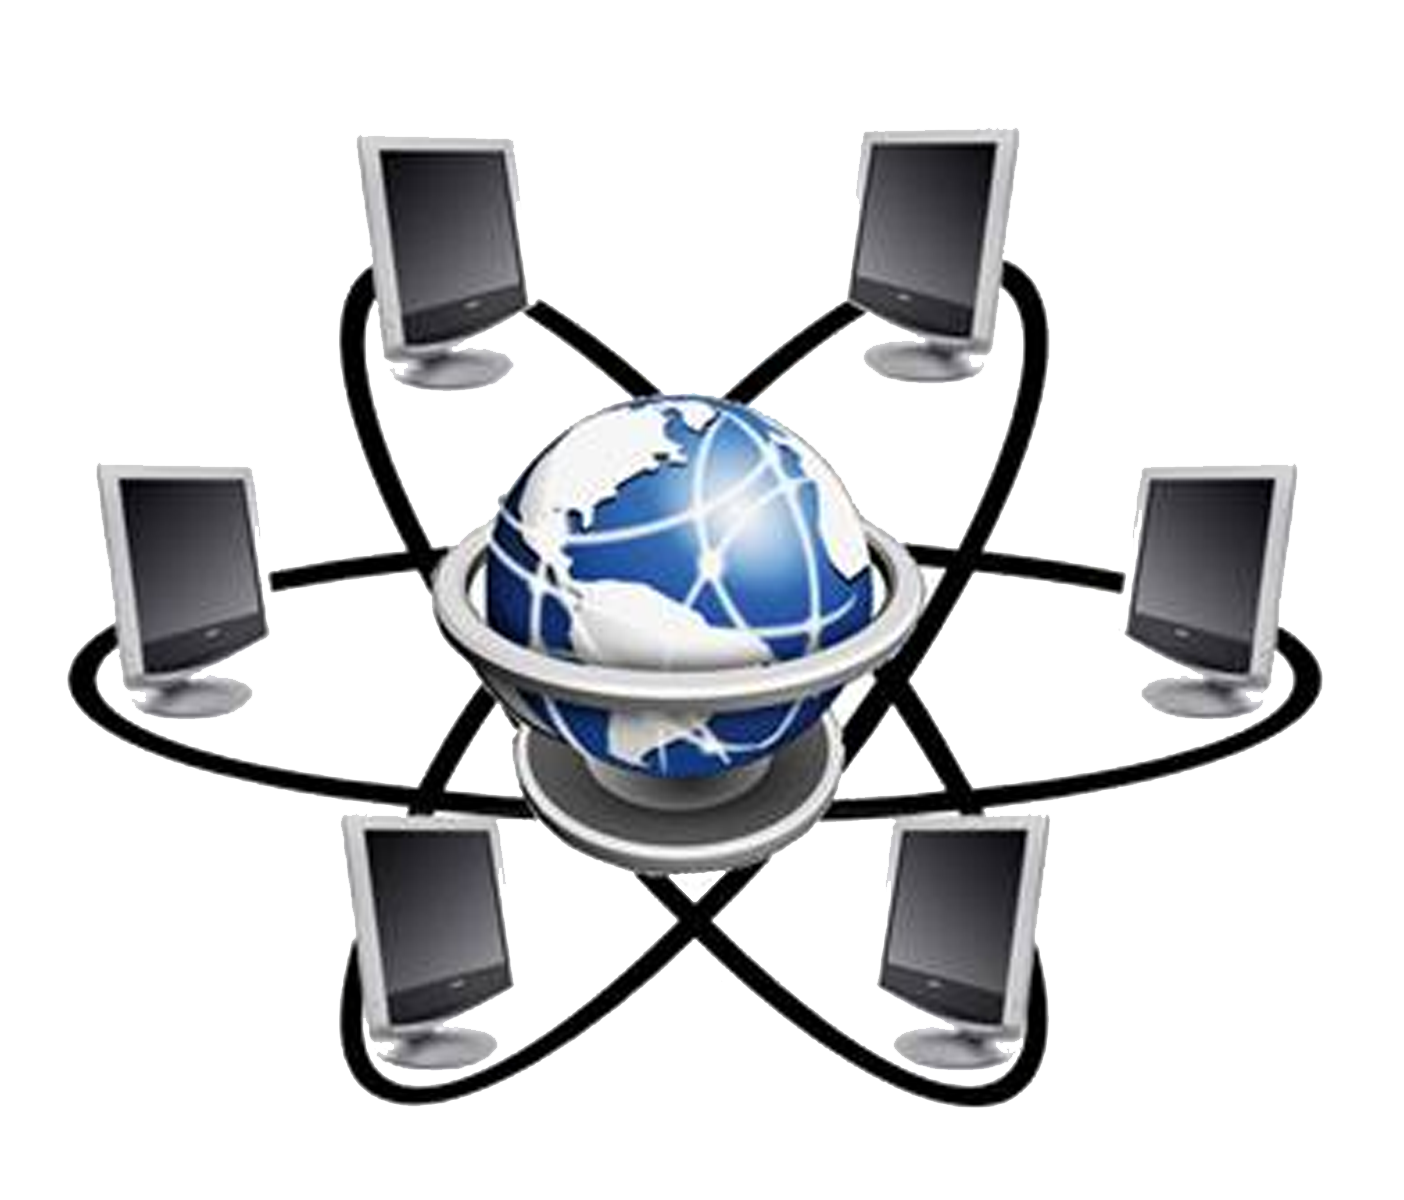 Международная телекоммуникационная сеть